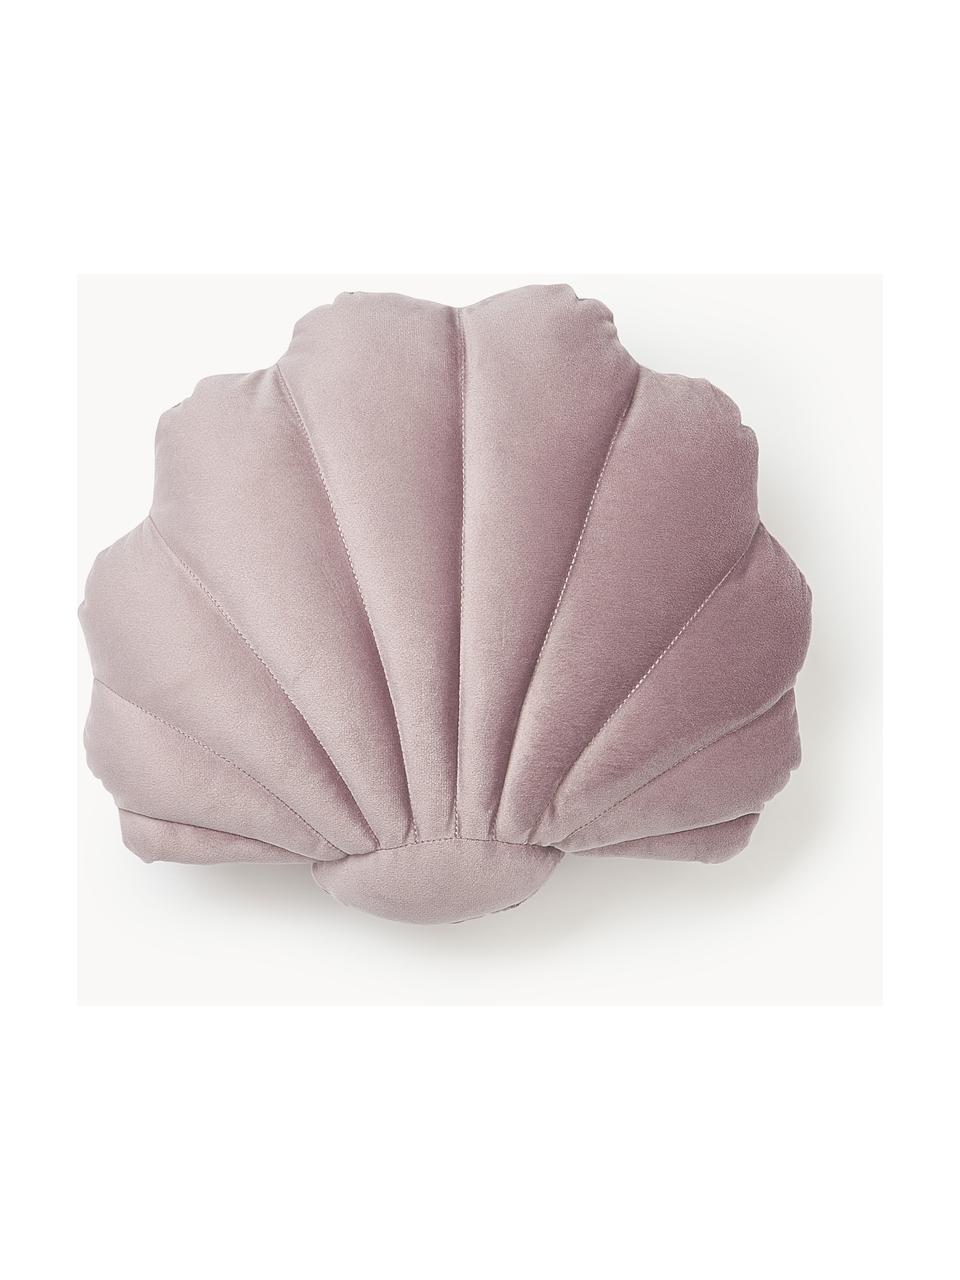 Cojín de terciopelo Shell, Parte delantera: 100% terciopelo de algodó, Parte trasera: 100% algodón, Rosa palo, An 32 x L 27 cm